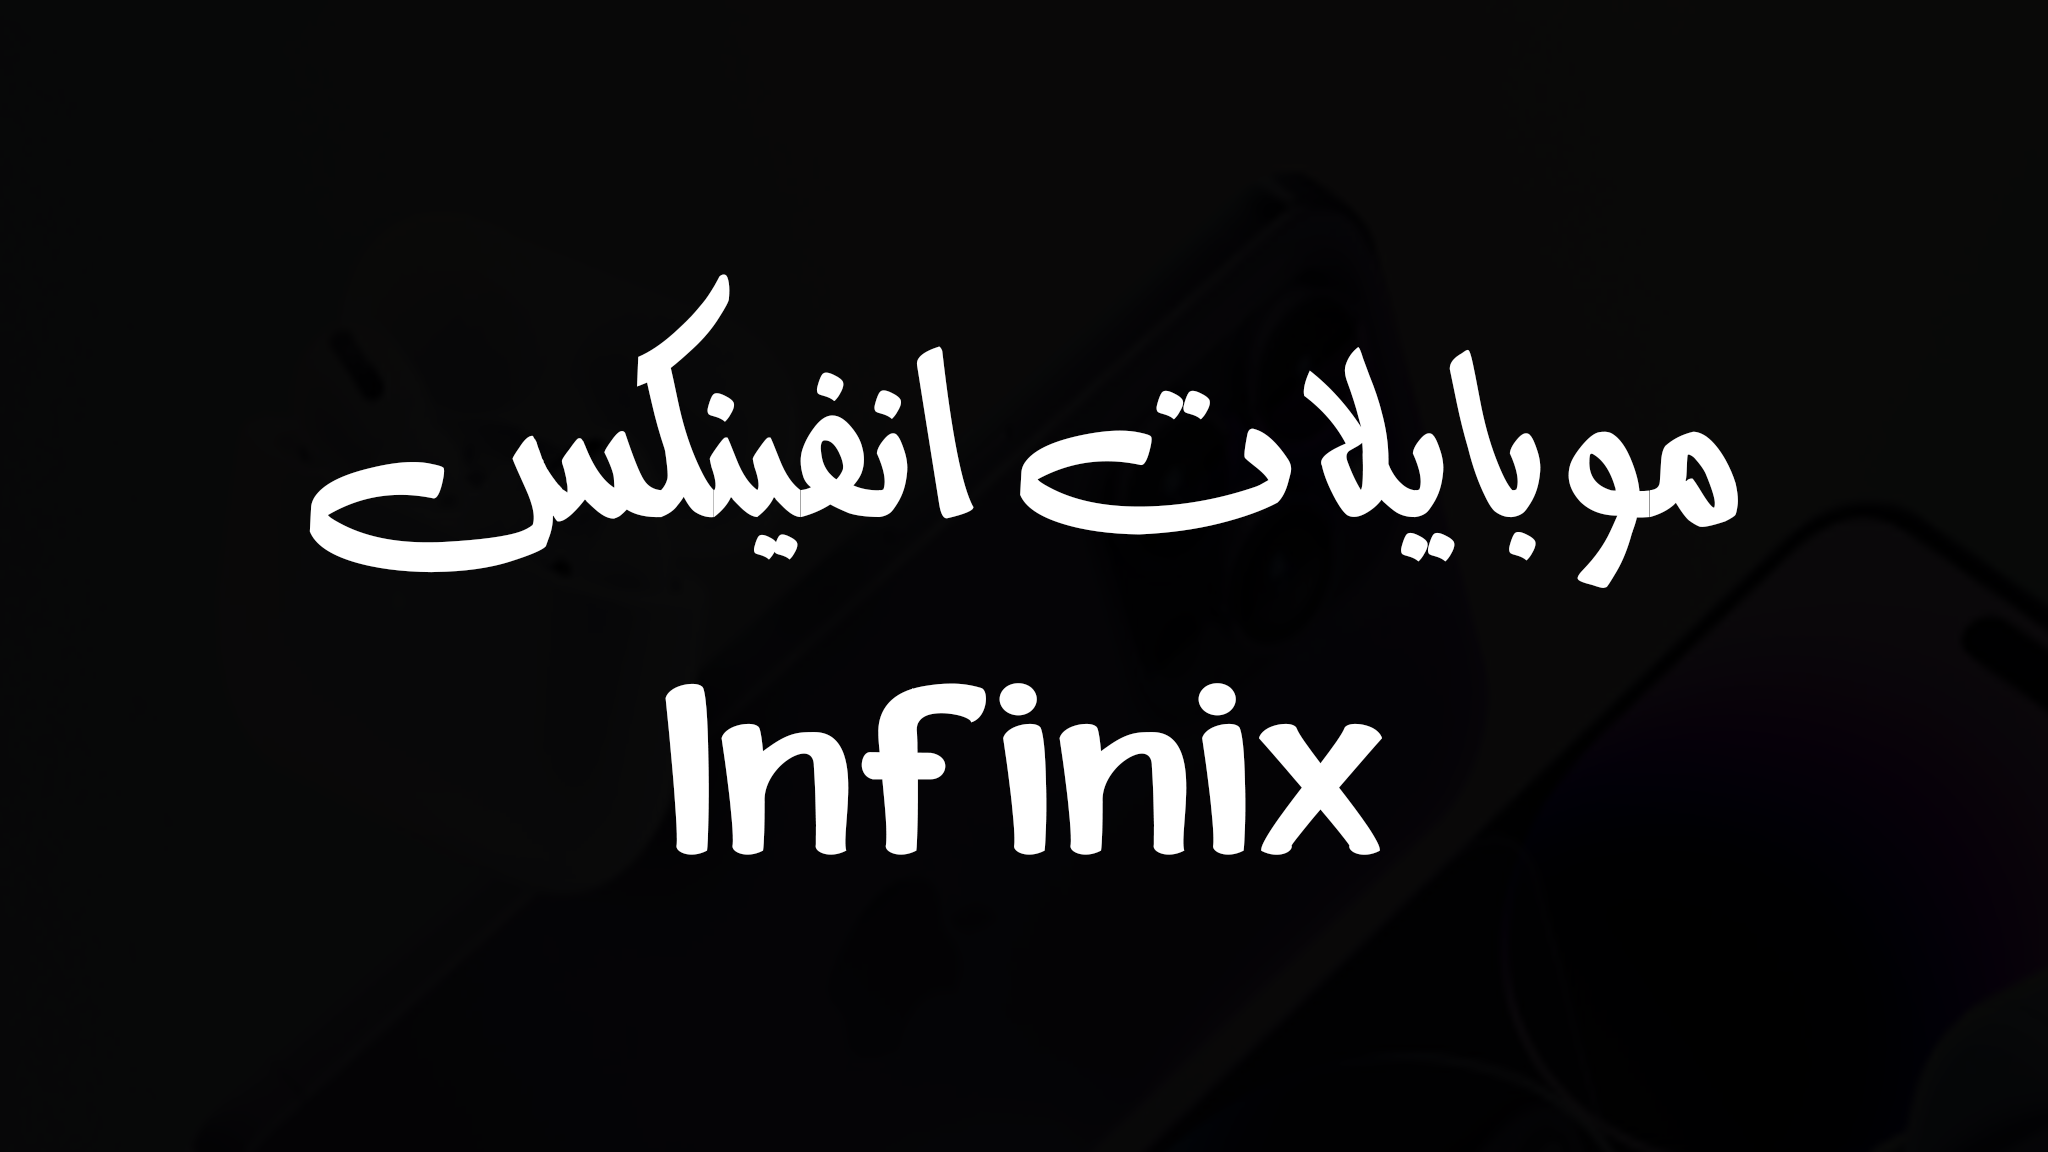 أسعار ومواصفات هواتف انفينكس – Infinix Mobile Phones Prices